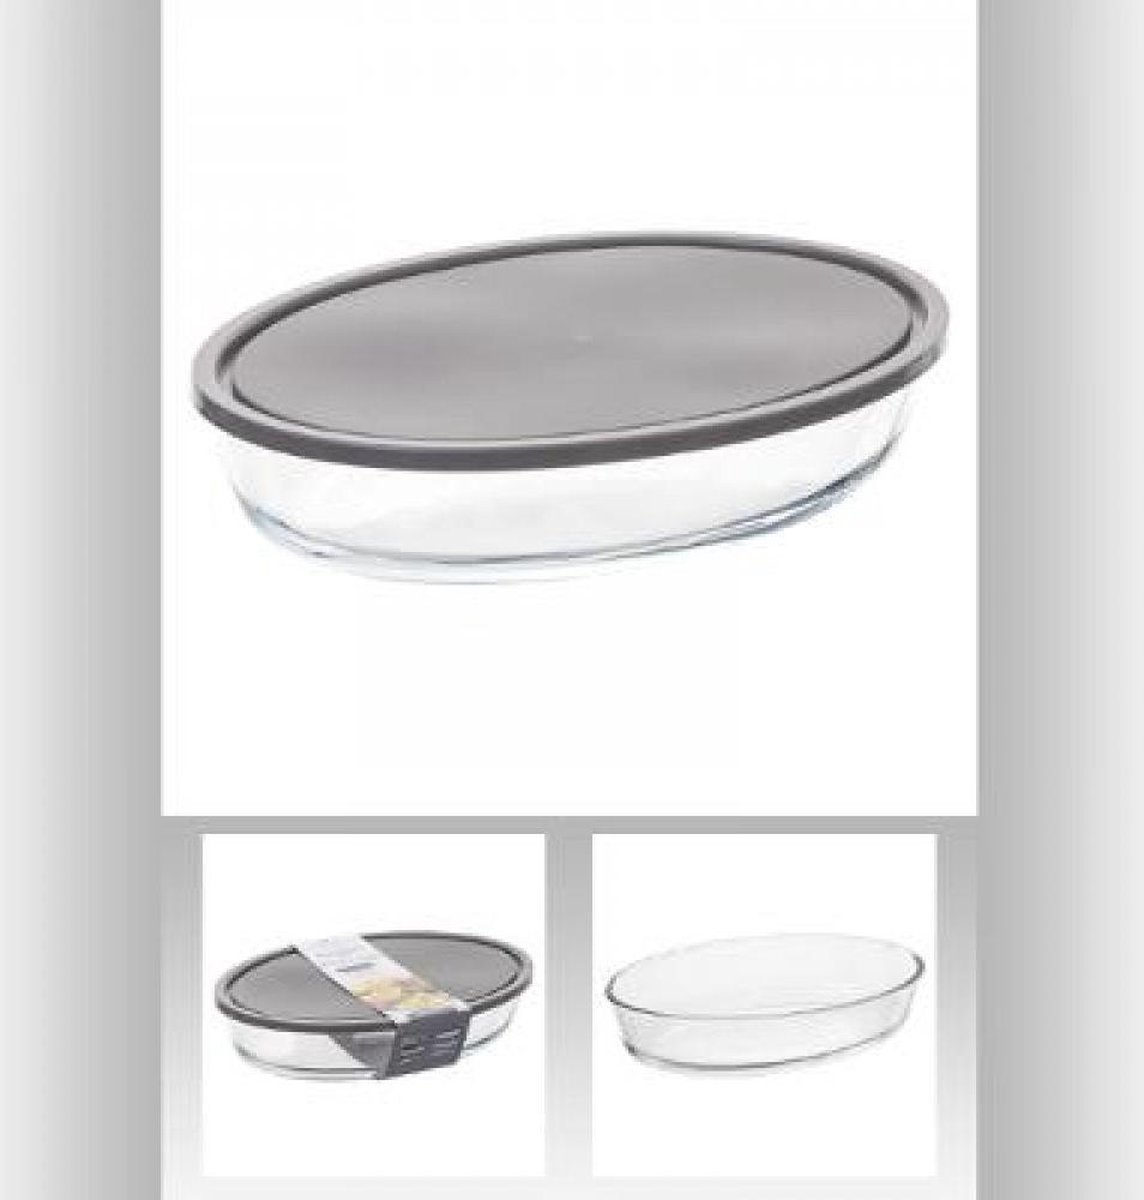 Glazen bakvorm/ovenschaal - ovaal 30x21x6,5 cm - oven/magnetron/koelkast/diepvriezer/vaatwasserbestendig - met deksel